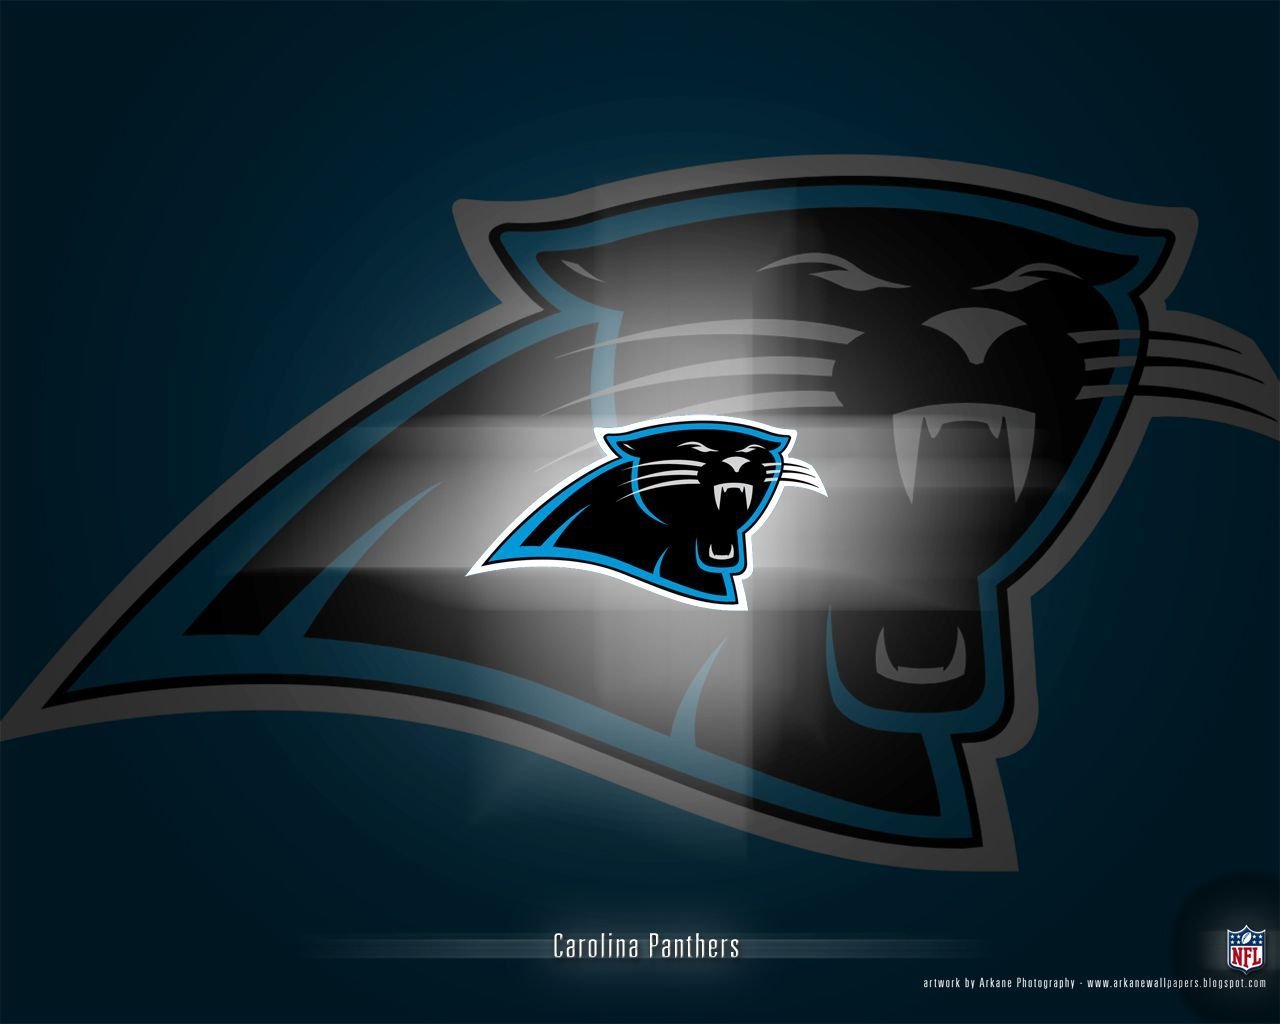 Carolina Panthers NFL Widescreen Wallpapers 